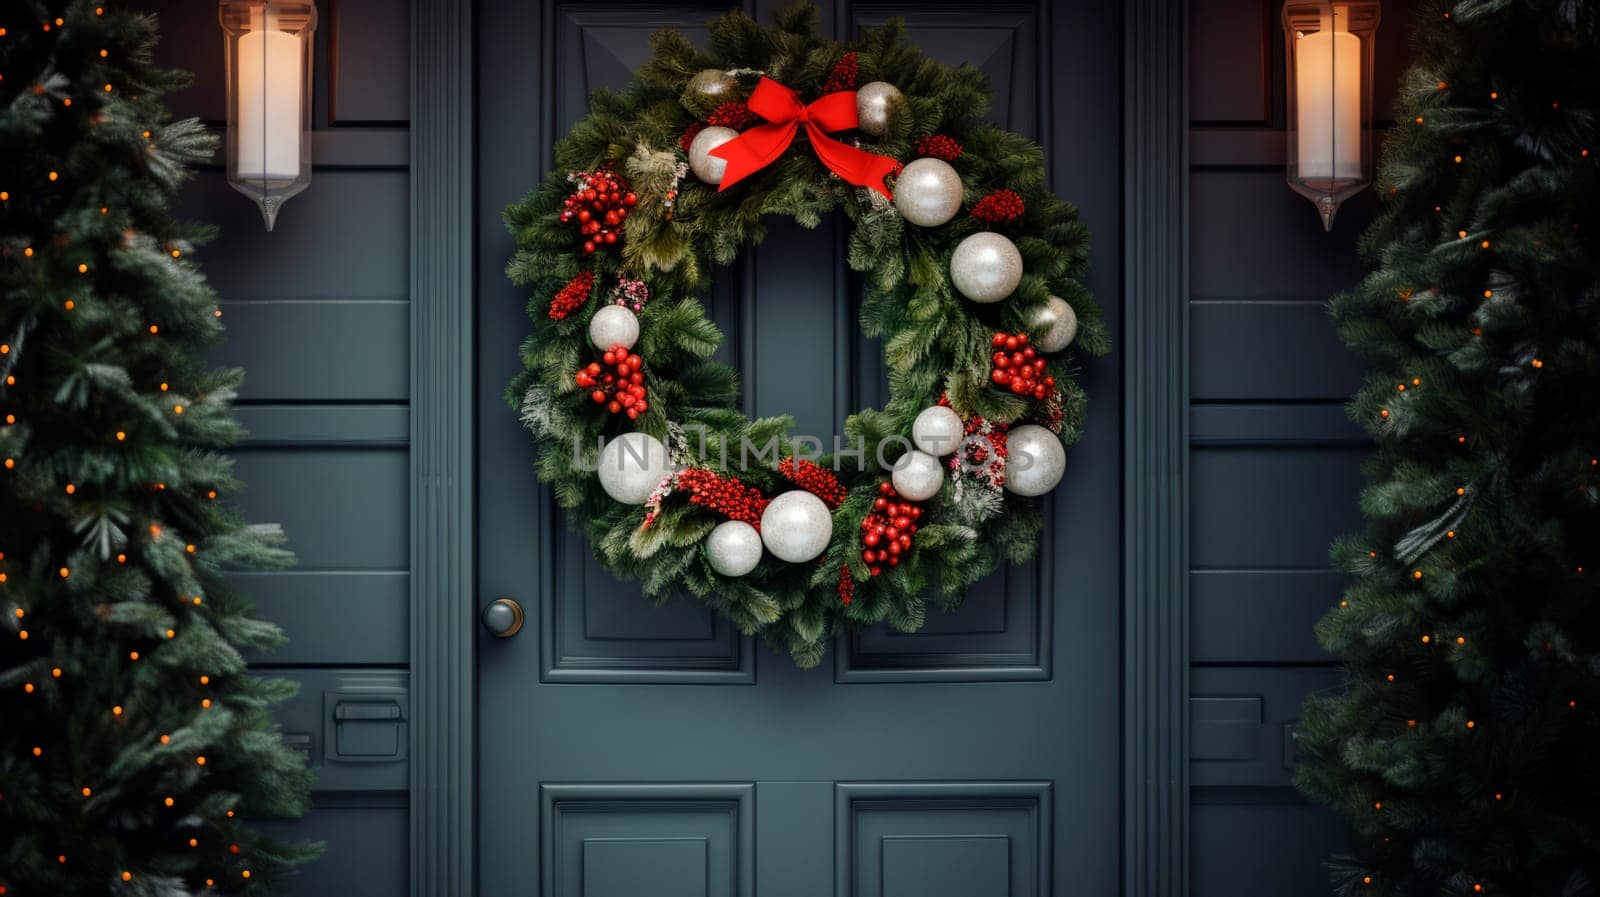 Beautiful Christmas wreath hanging on wooden door by Spirina